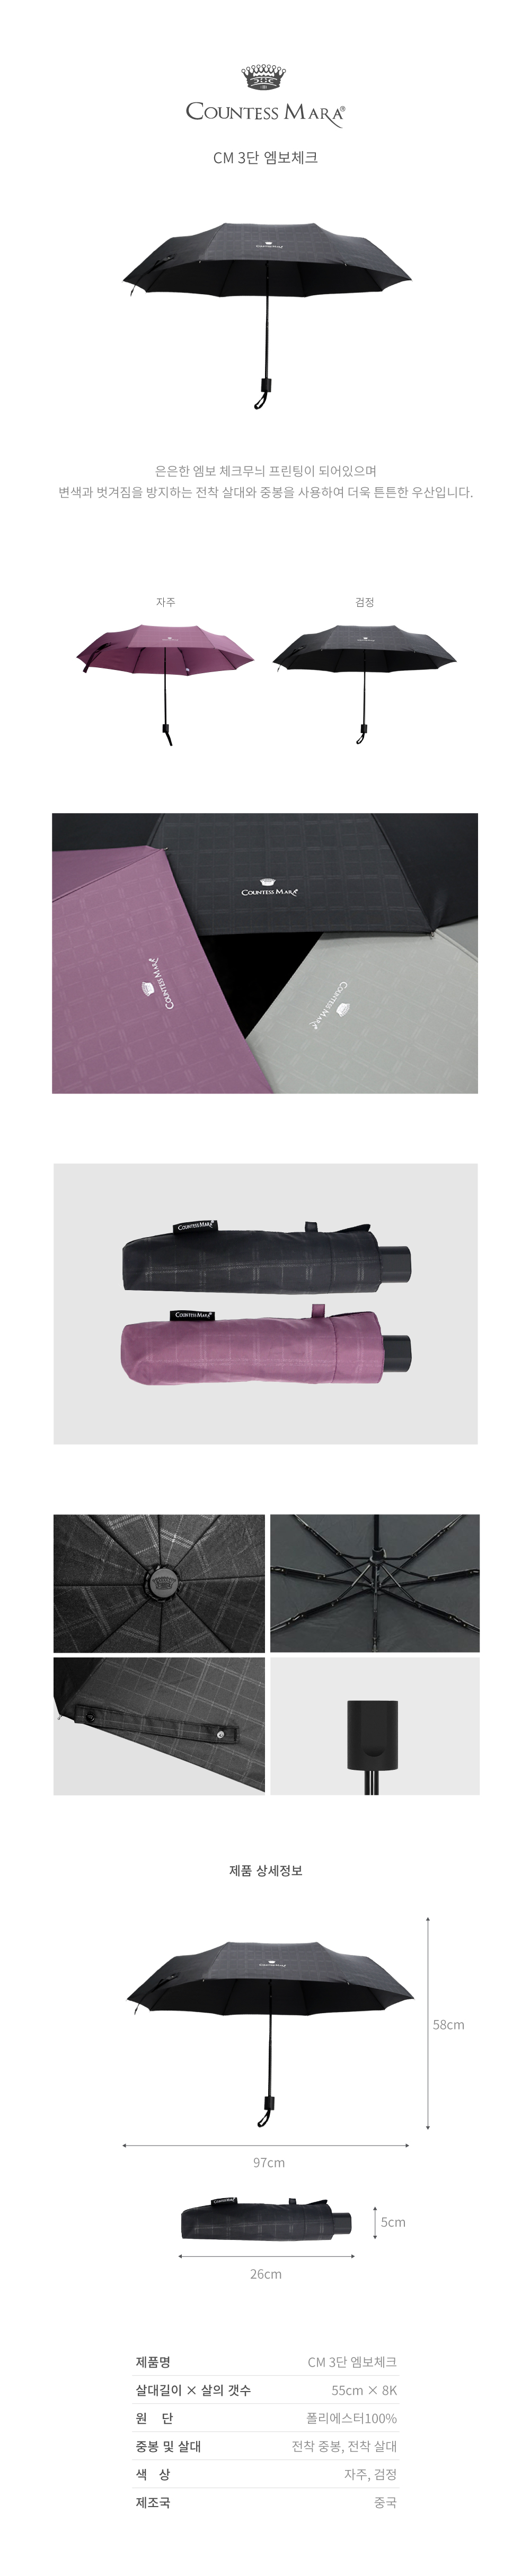 은은한 엠보 체크무늬 프린팅이 되어있으며 변색과 벗겨짐을 방지하는 전착 살대와 중봉을 사용하여 더욱 튼튼한 우산입니다.